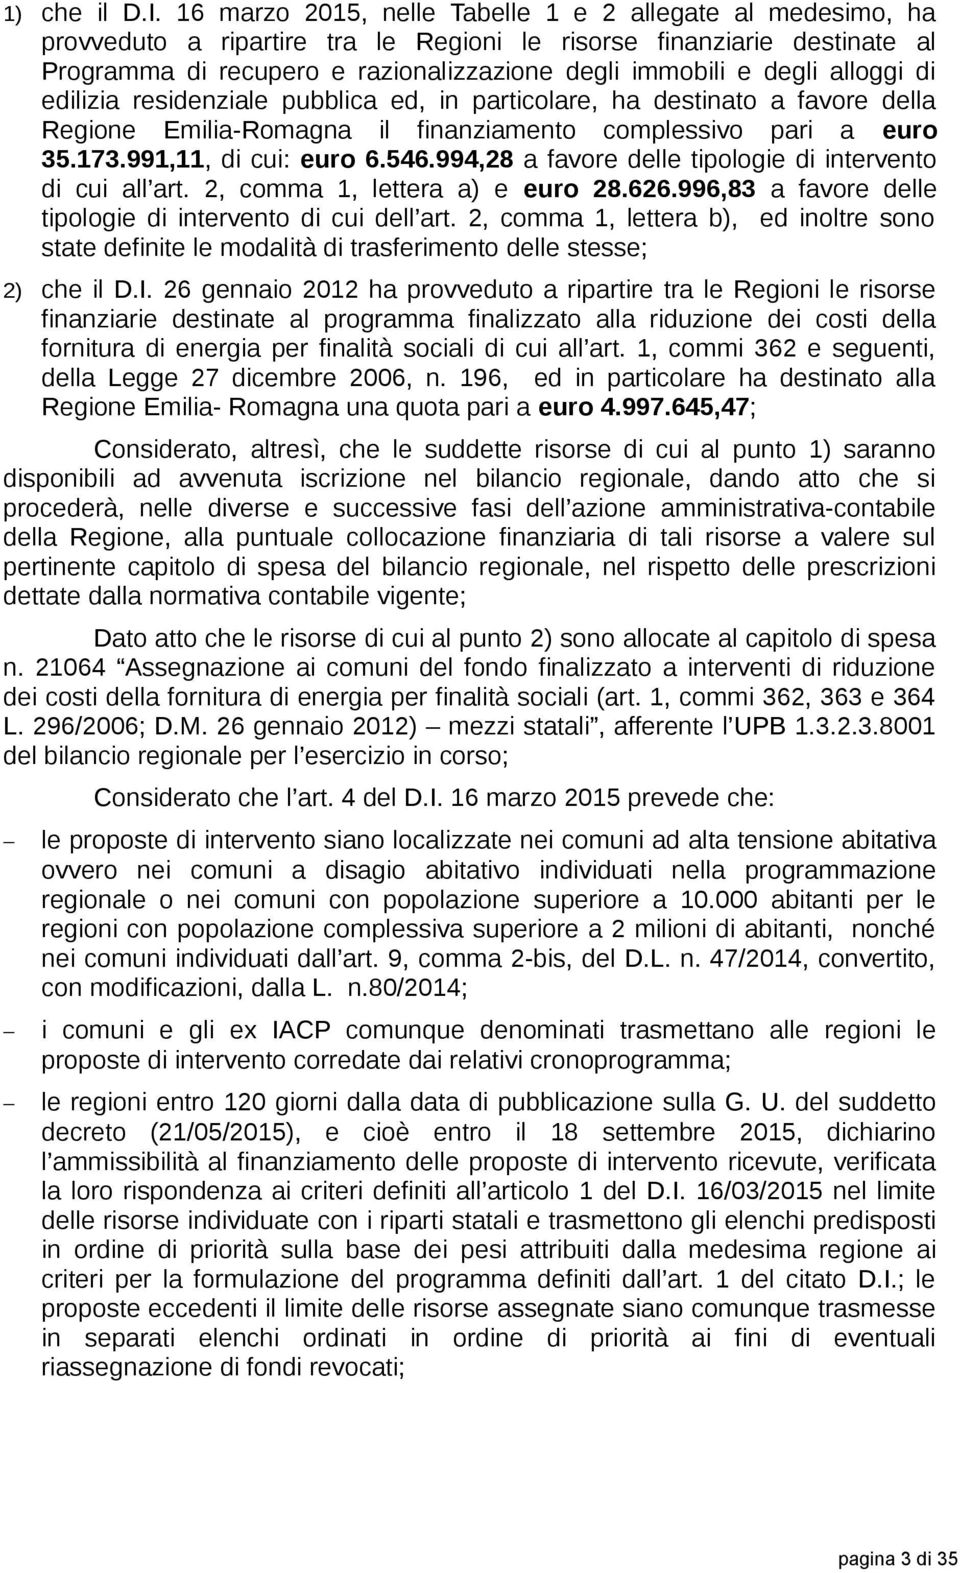 alloggi di edilizia residenziale pubblica ed, in particolare, ha destinato a favore della Regione Emilia-Romagna il finanziamento complessivo pari a euro 35.173.991,11, di cui: euro 6.546.